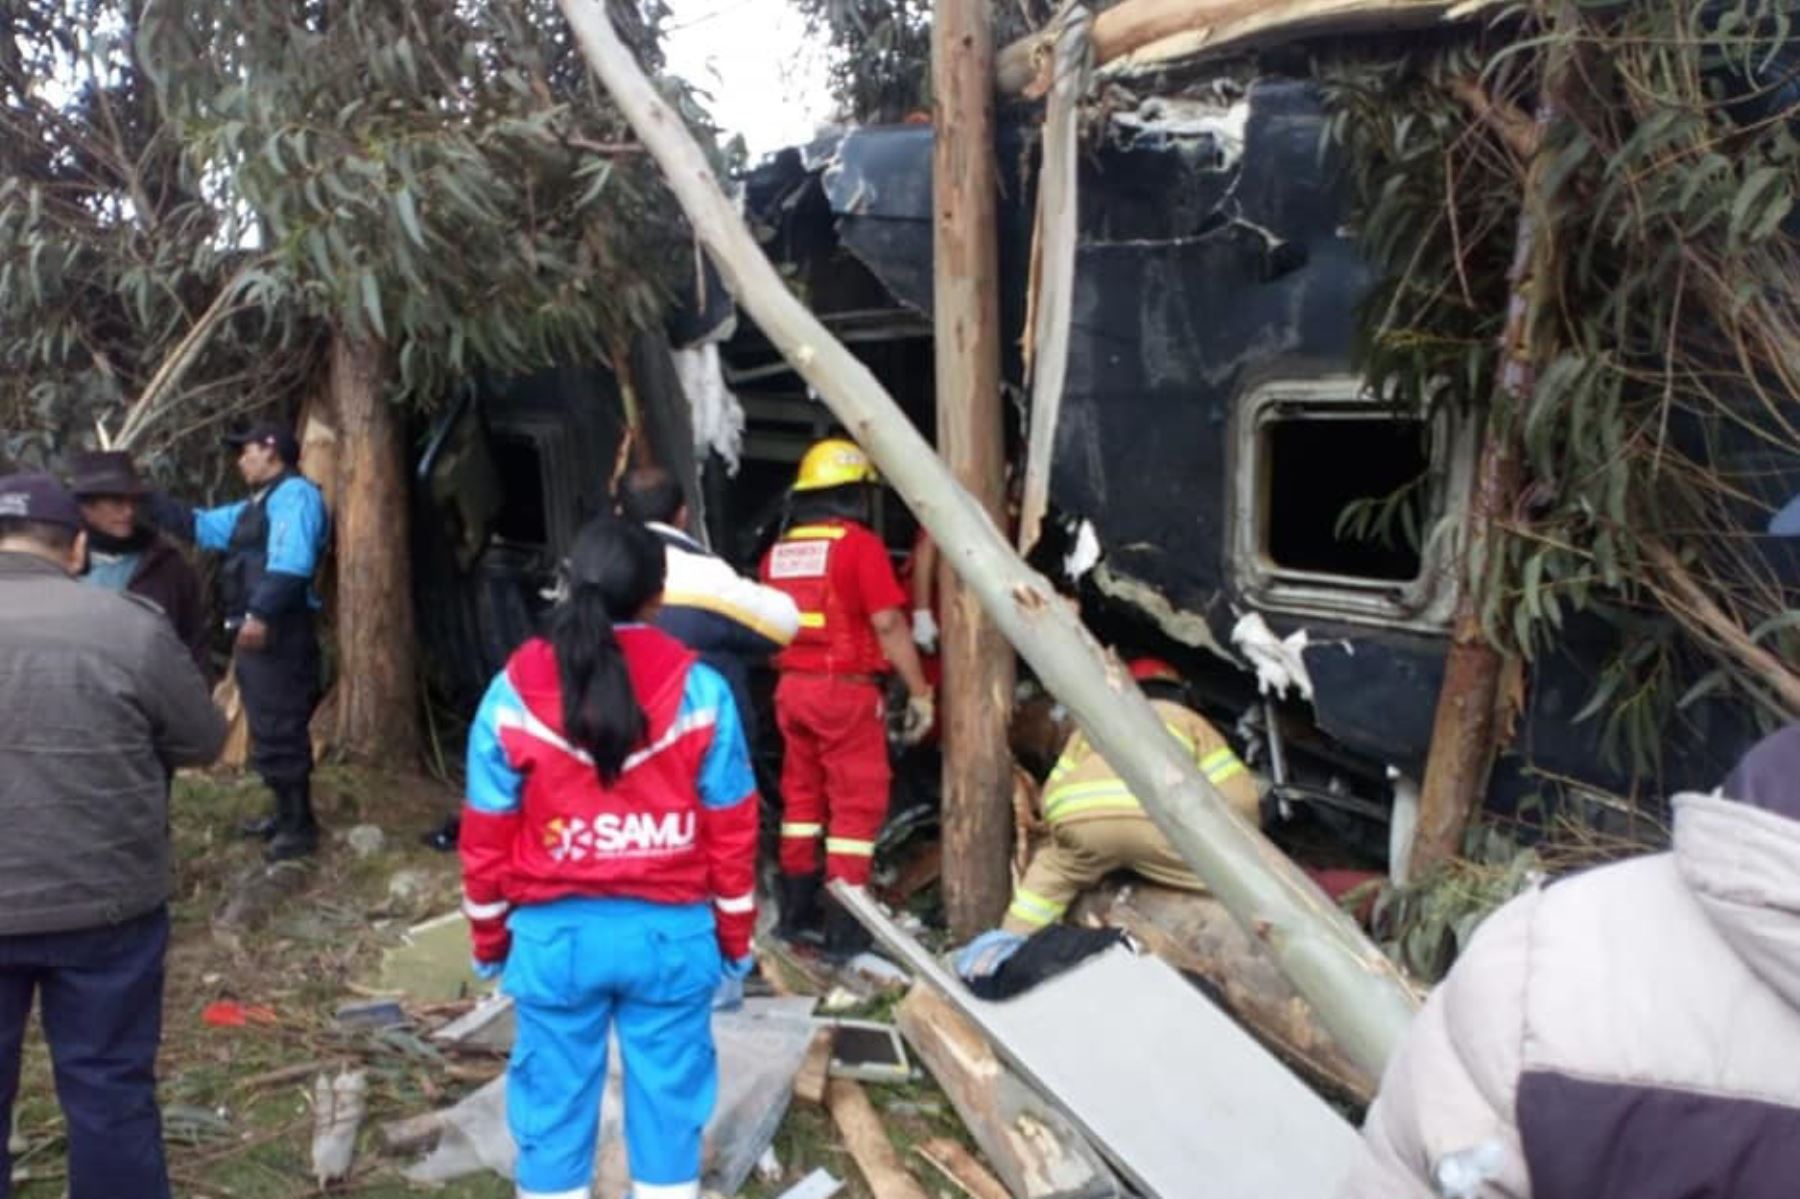 Dos muertos y al menos 20 heridos deja accidente vial en Ayacucho. Foto: Ensartes/Facebook